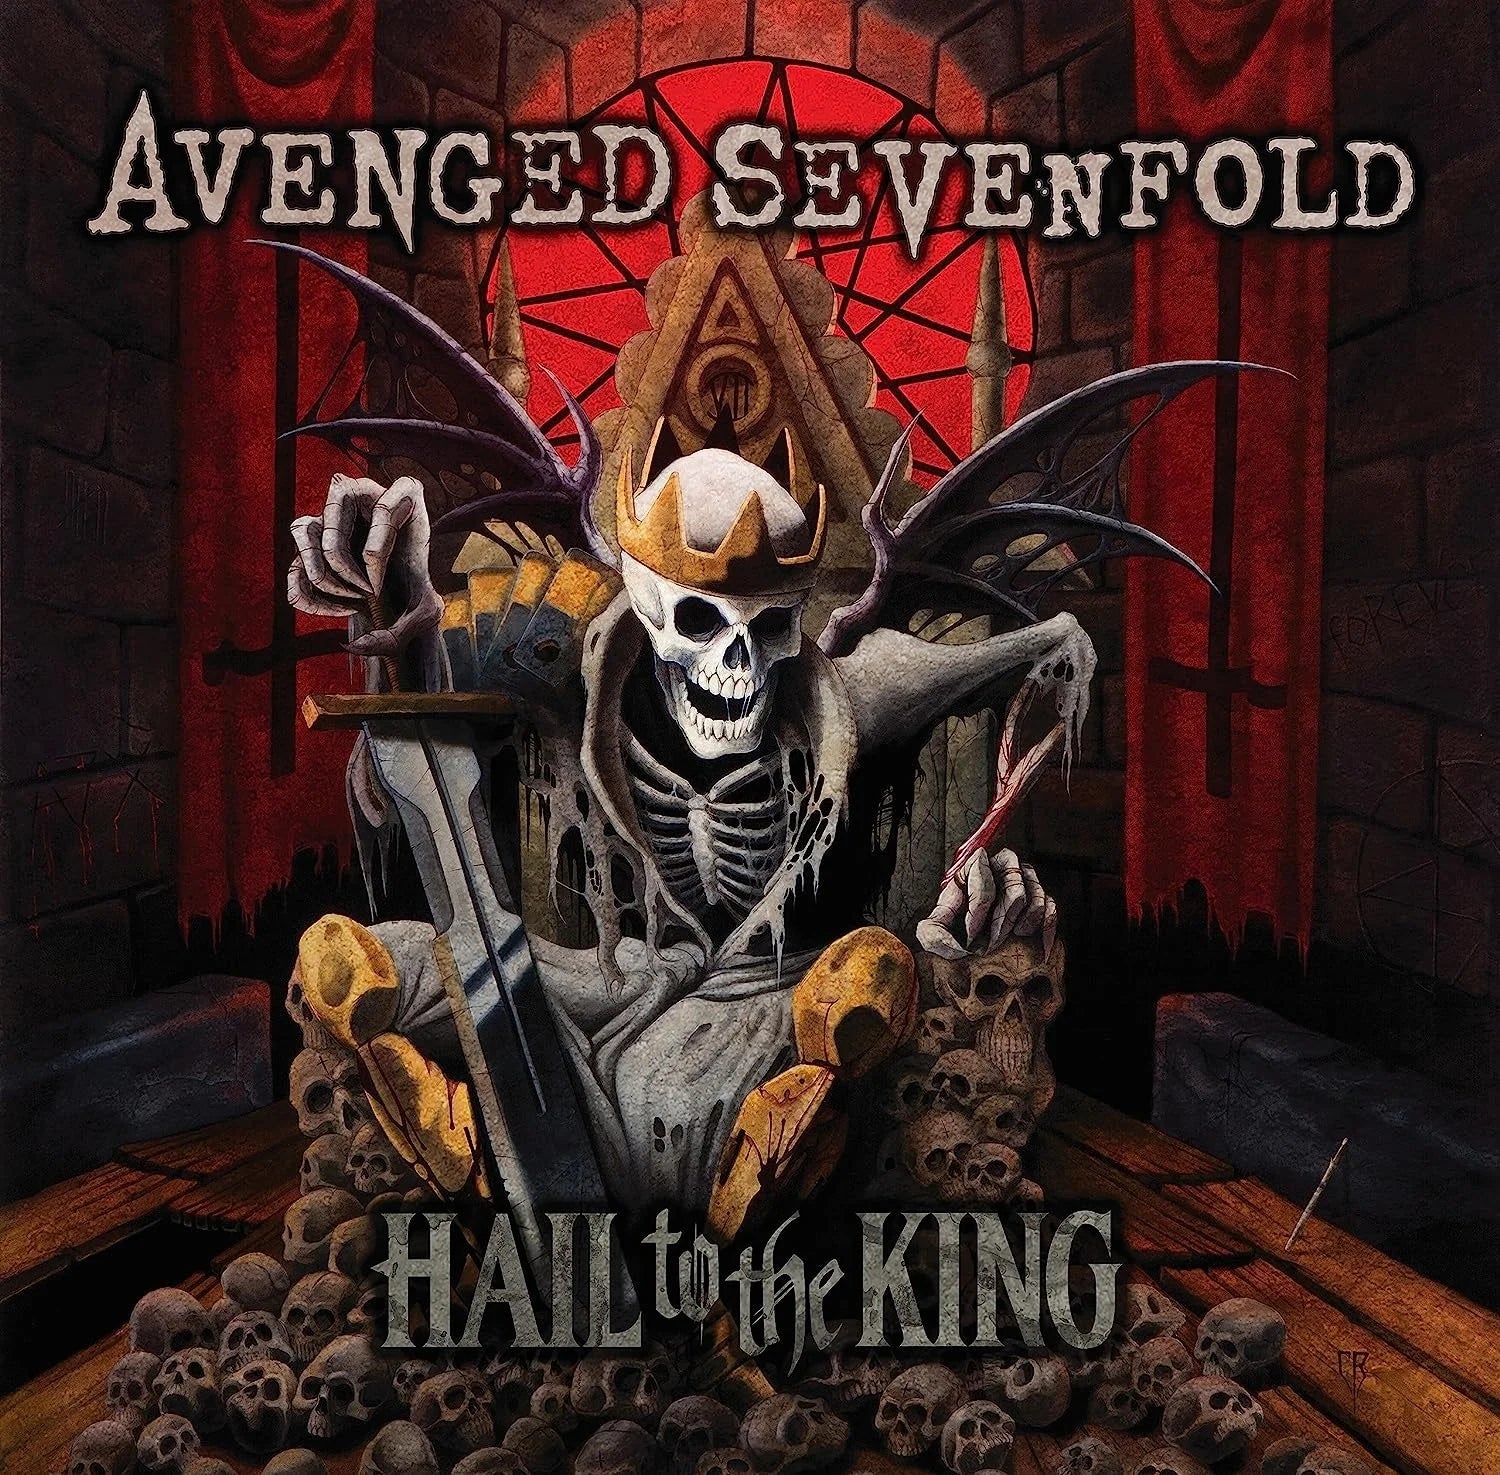 Avenged Sevenfold - Afterlife (2008)